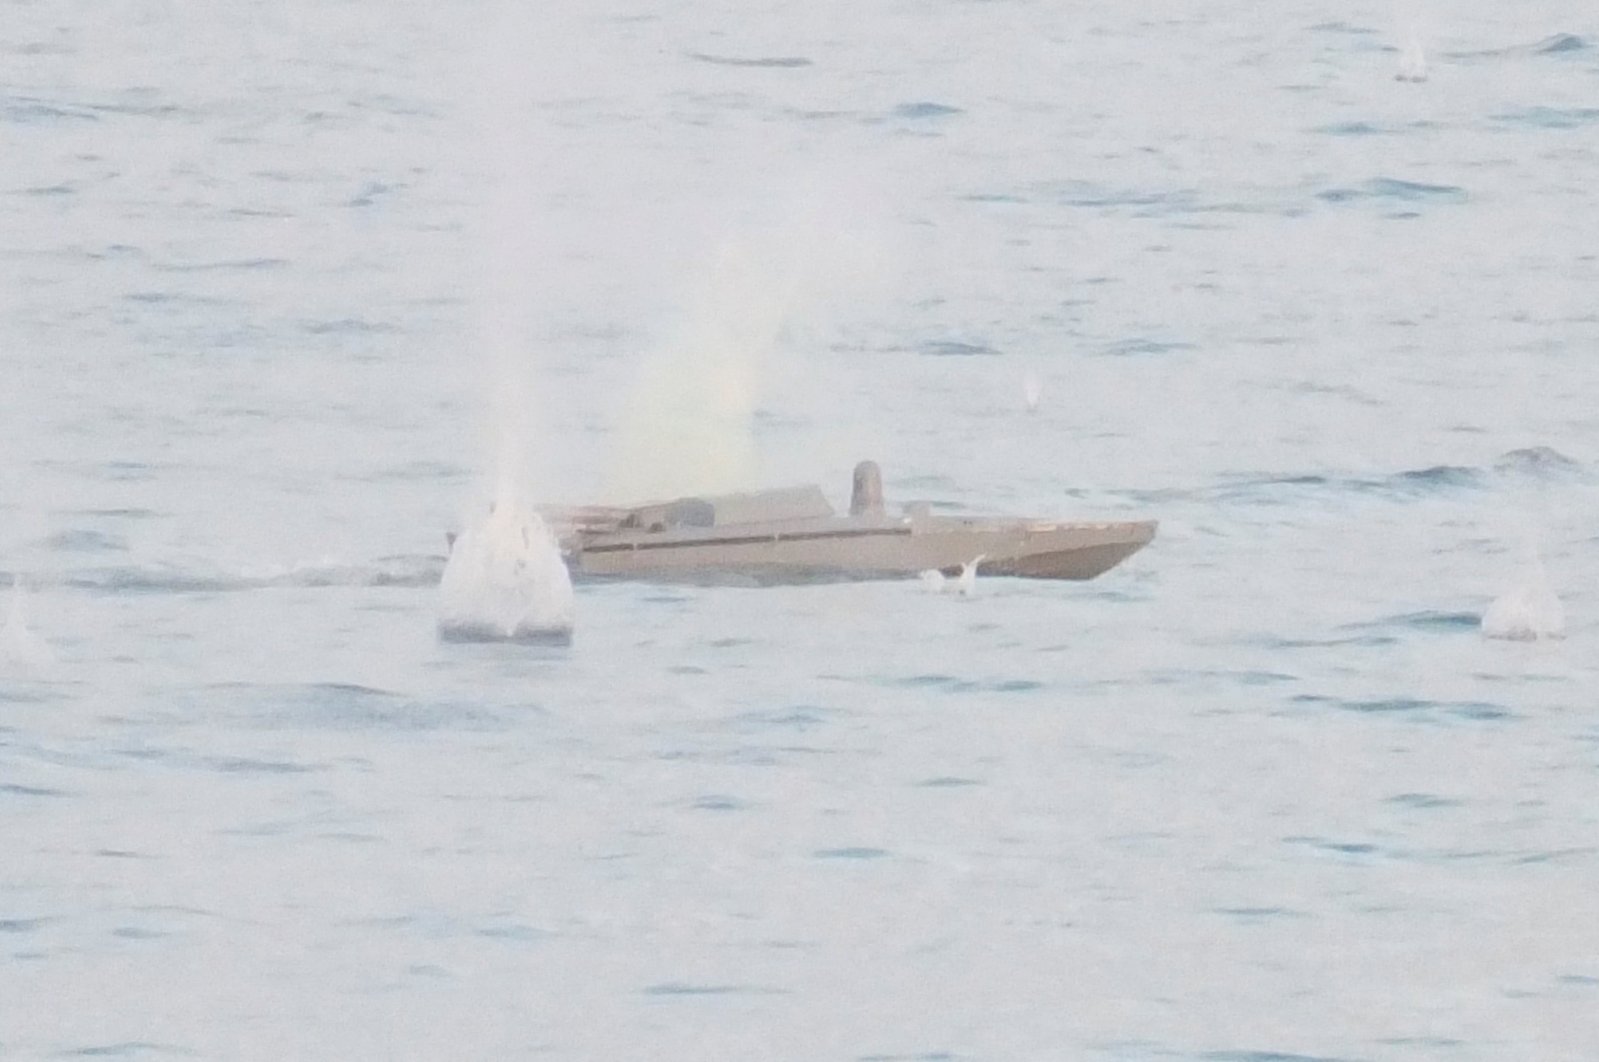 Ukraina mencoba menyerang kapal yang menjaga jaringan pipa gas utama: Rusia